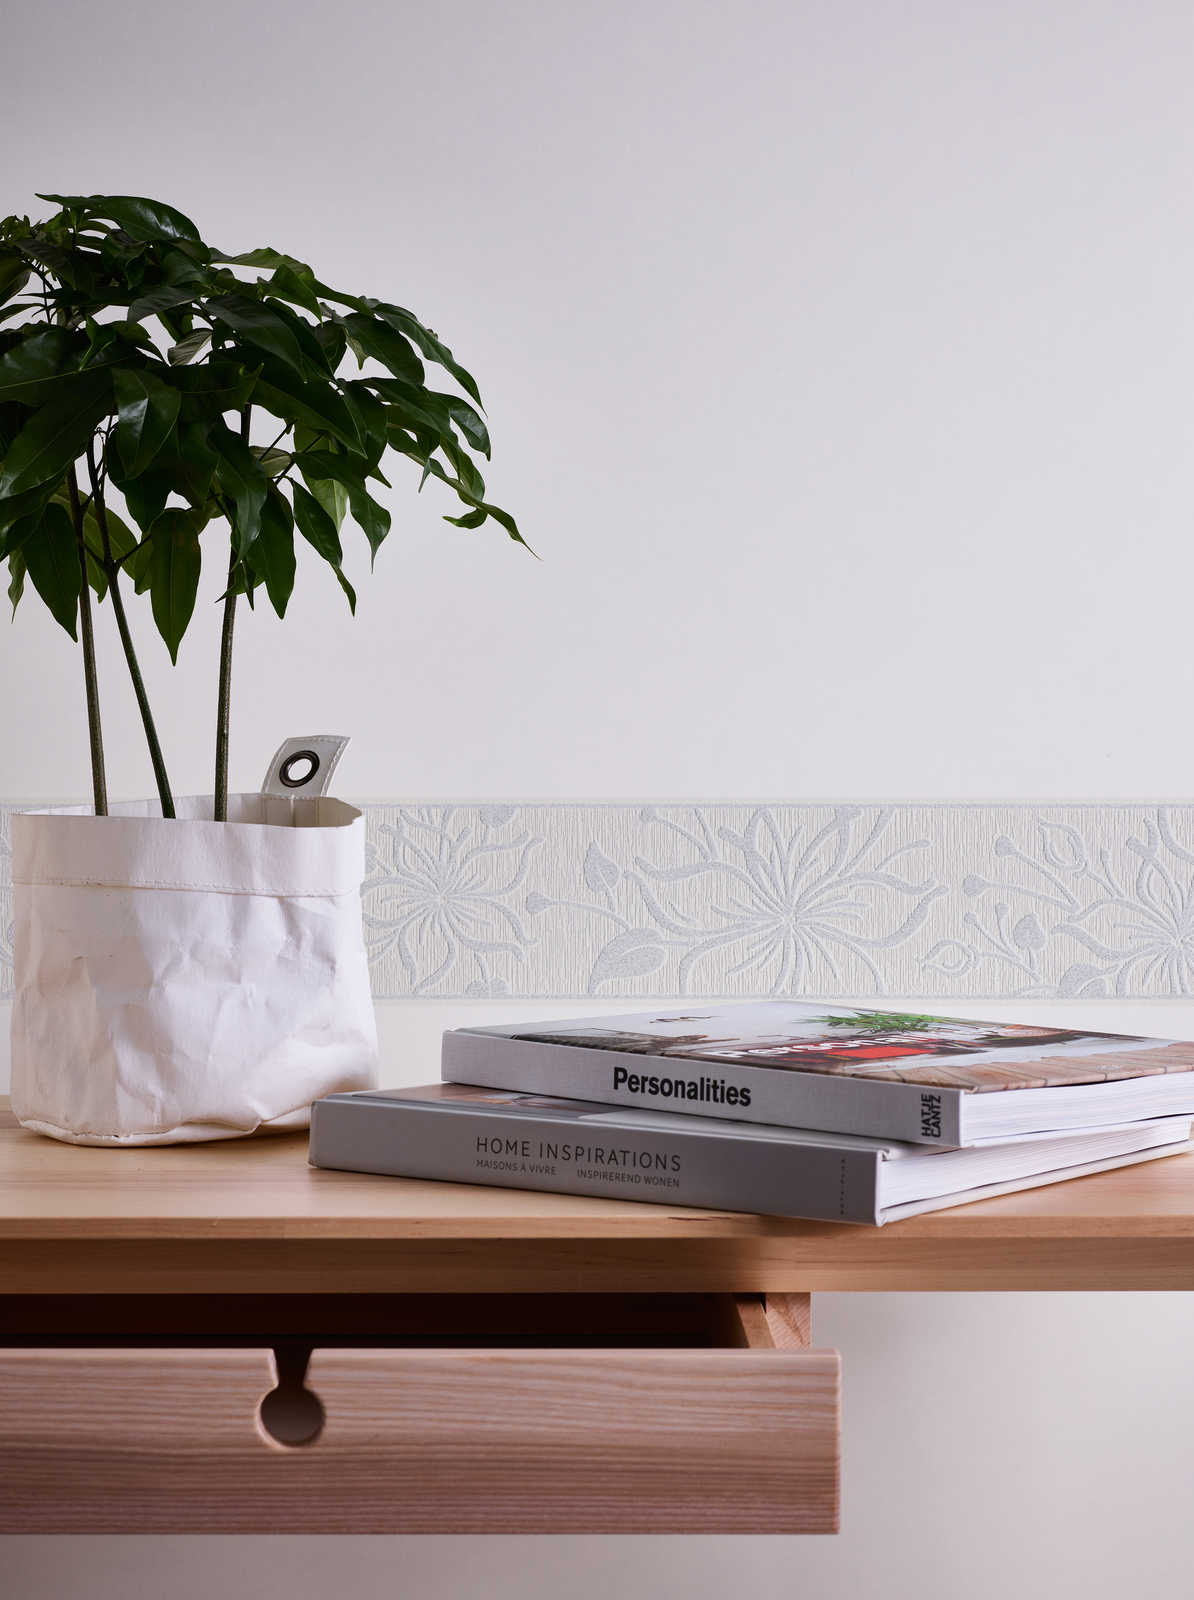             Bordure de papier peint blanc avec motif à fleurs & design structuré
        